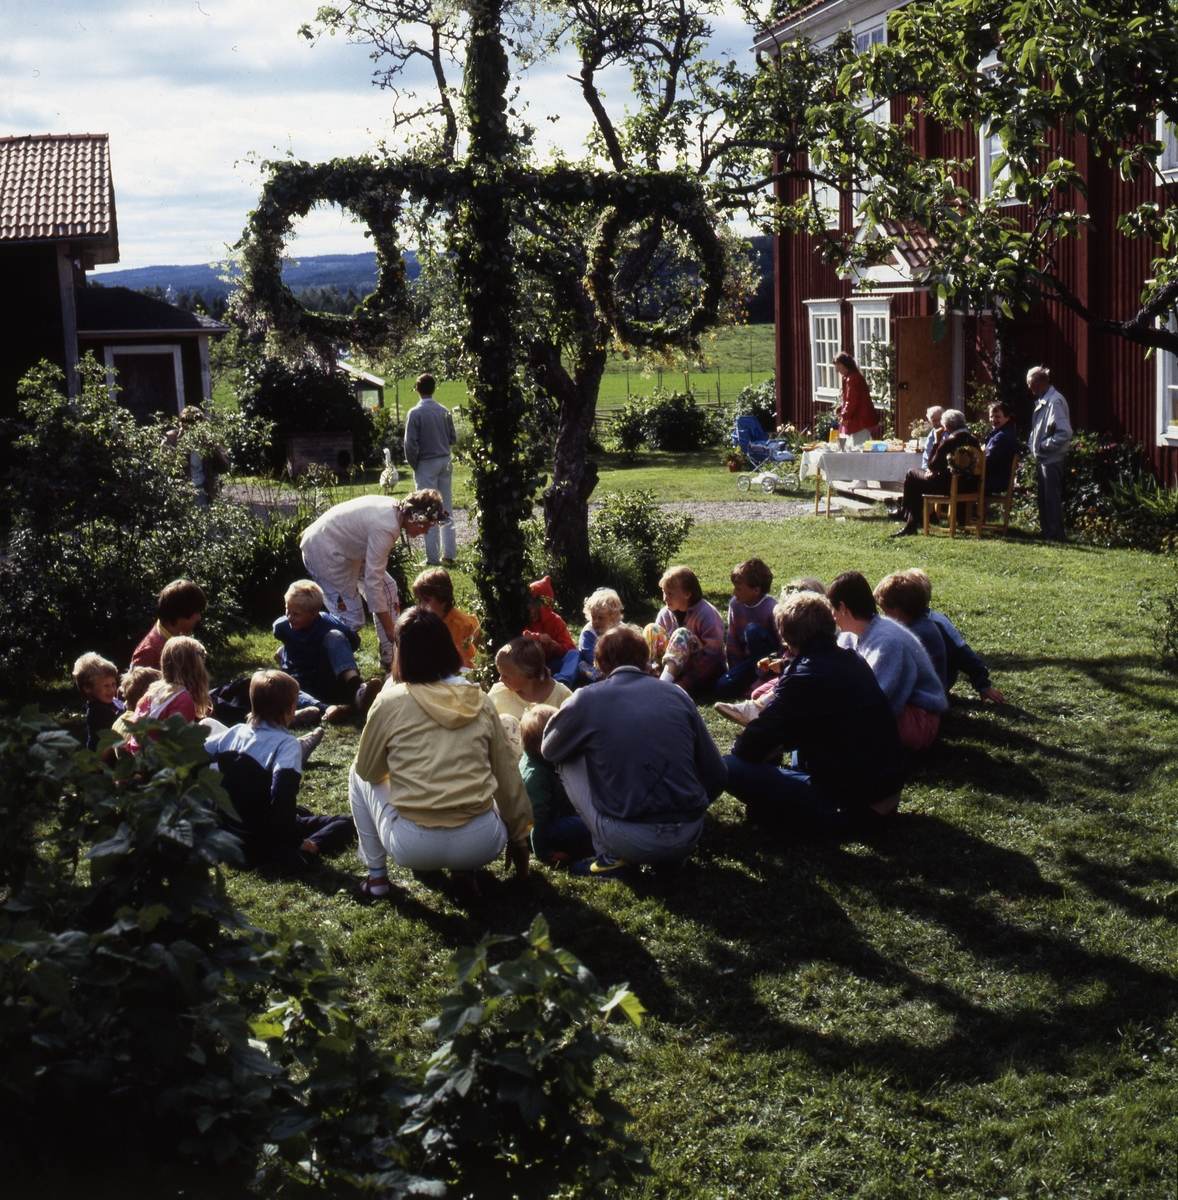 En grupp vuxna och barn sitter samlade på en gräsmatta runt en lövad midsommarstång. Vid entrén till huset sitter några vuxna vid ett bord, kanske dukat med fika.